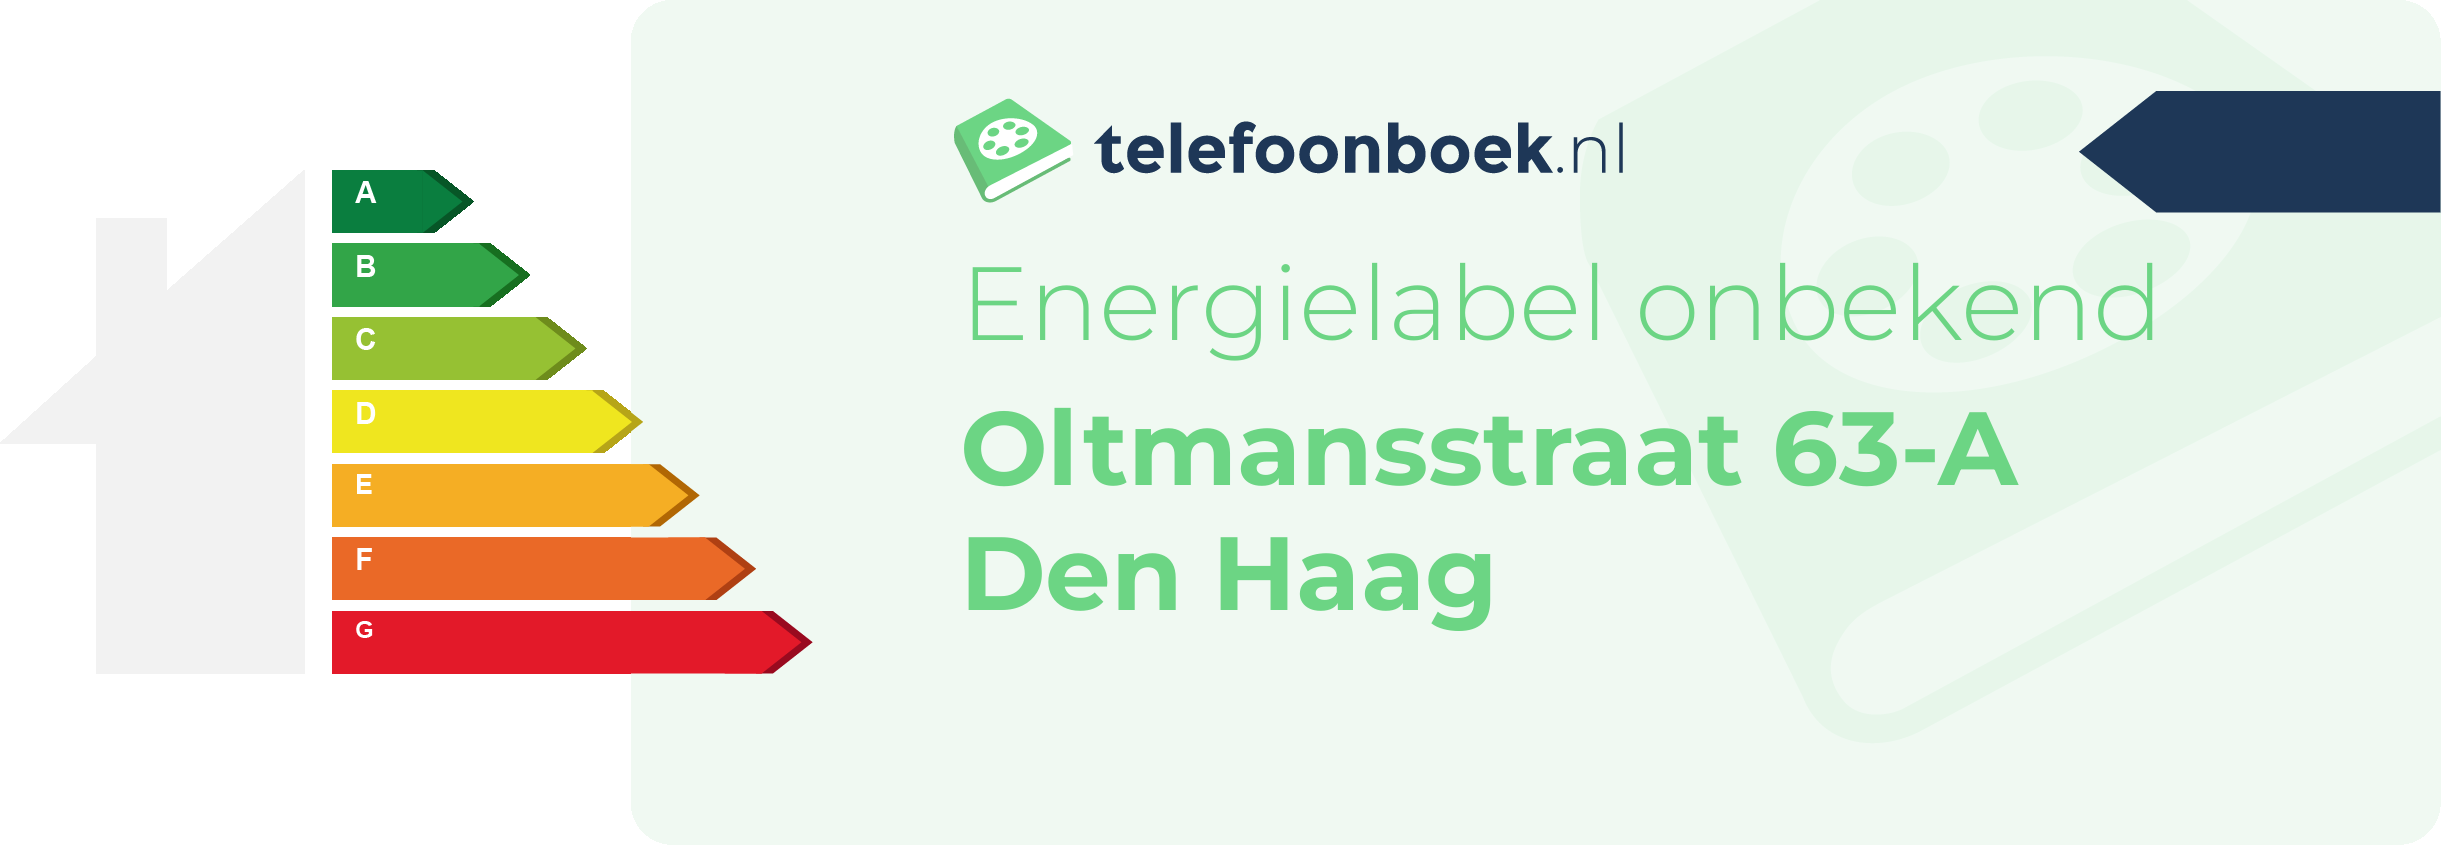 Energielabel Oltmansstraat 63-A Den Haag